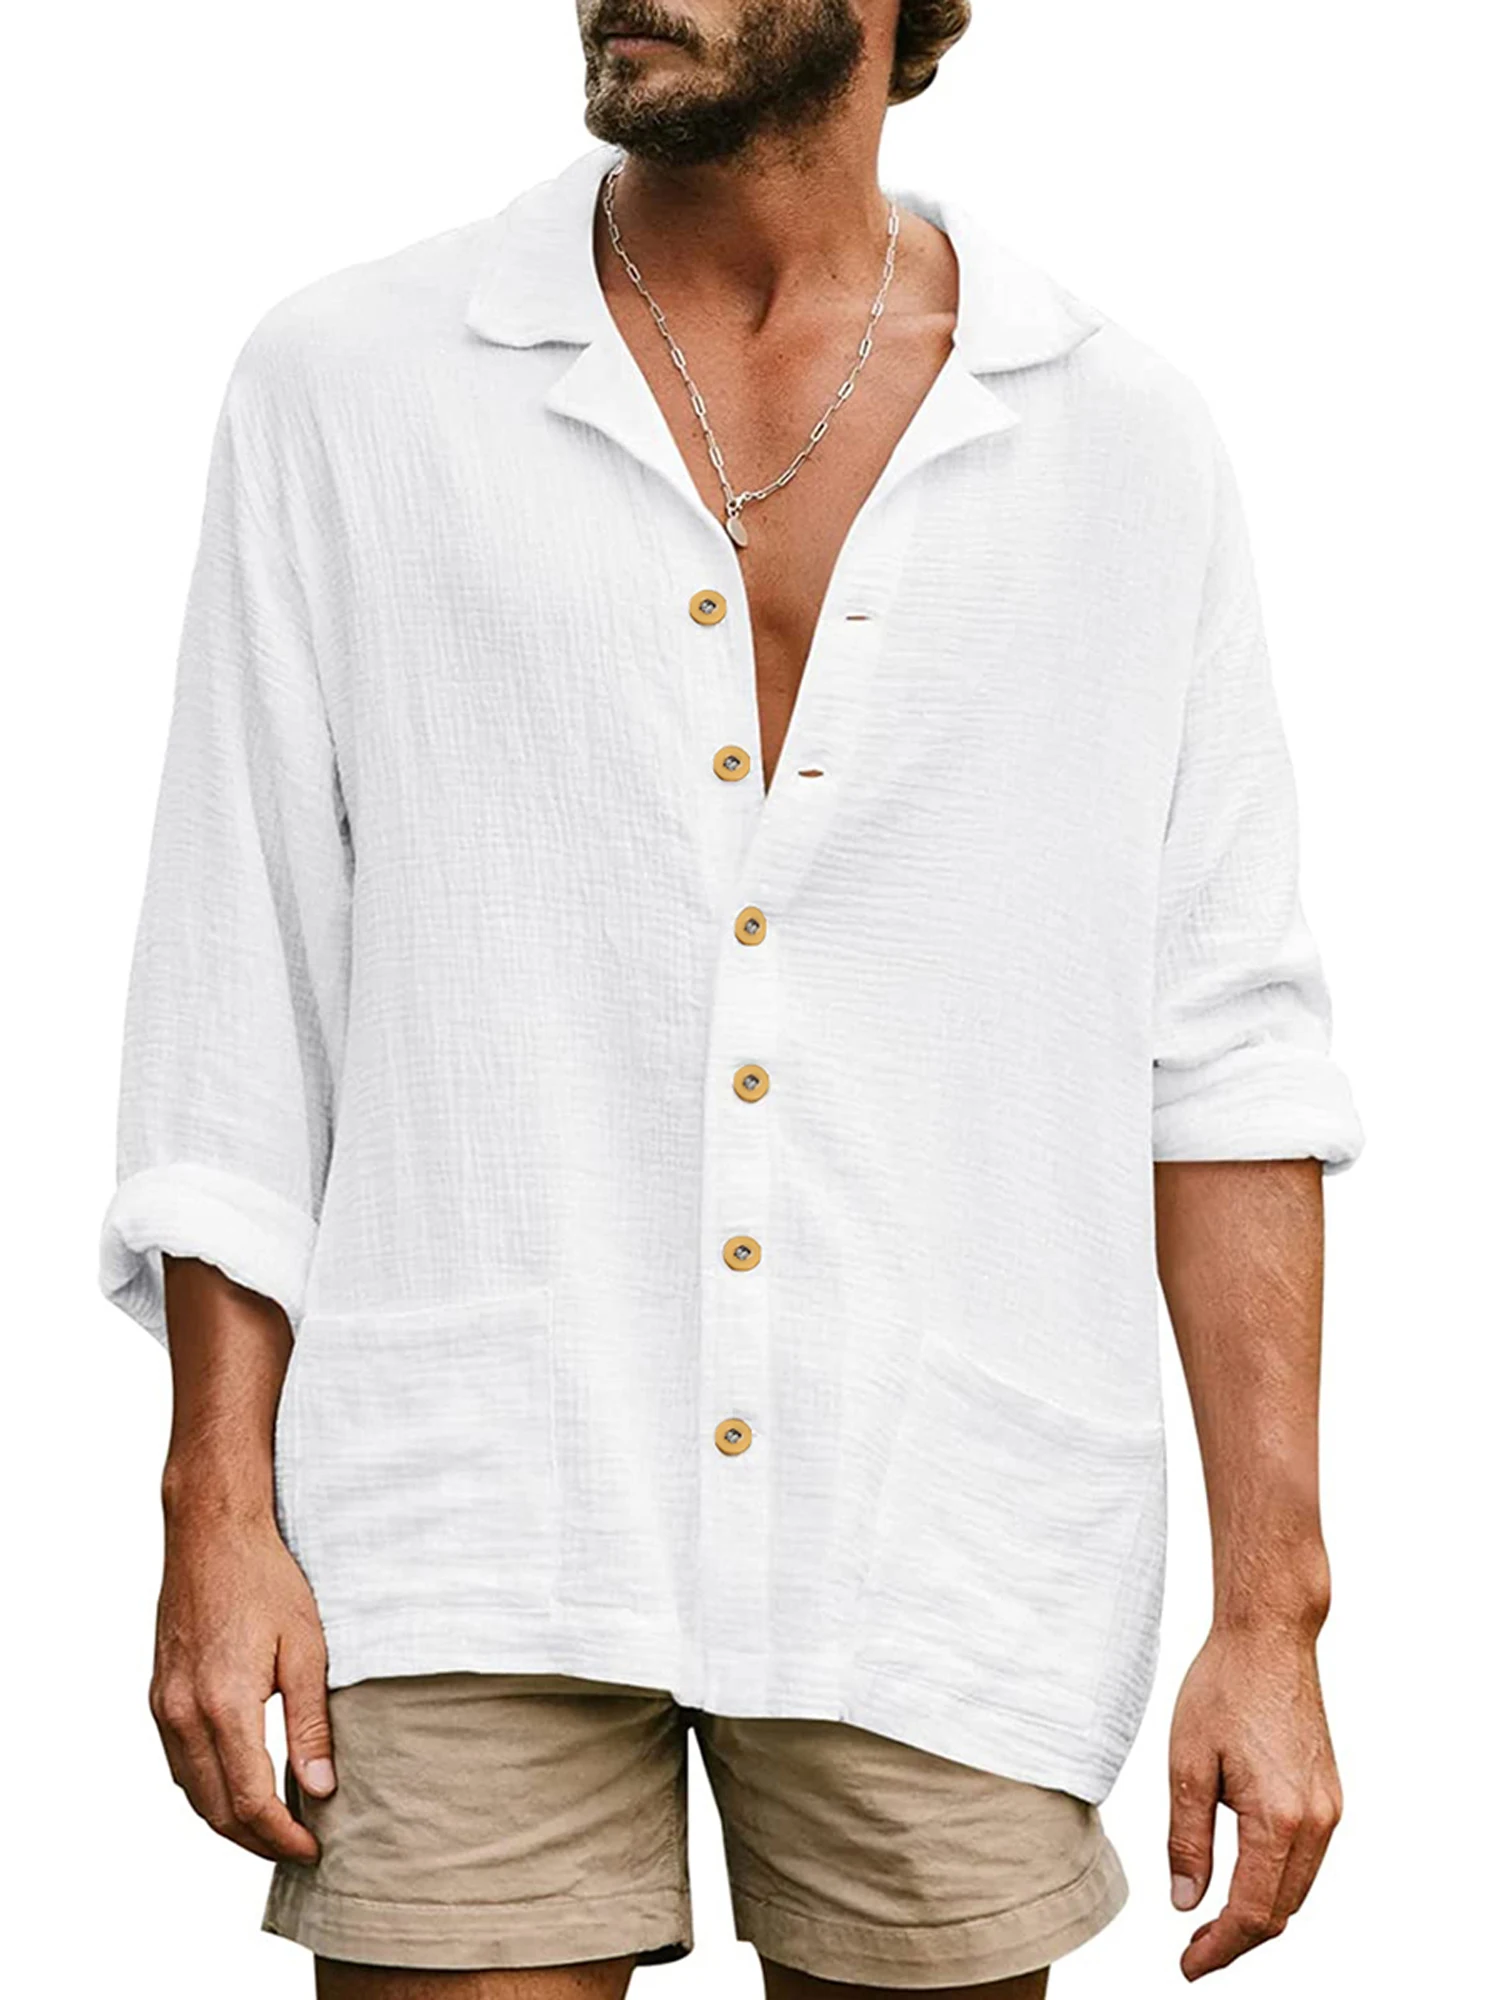 

Camisa de manga larga con botones para hombre estilo hippie holgada transpirable manga 3 4 blusa casual de verano